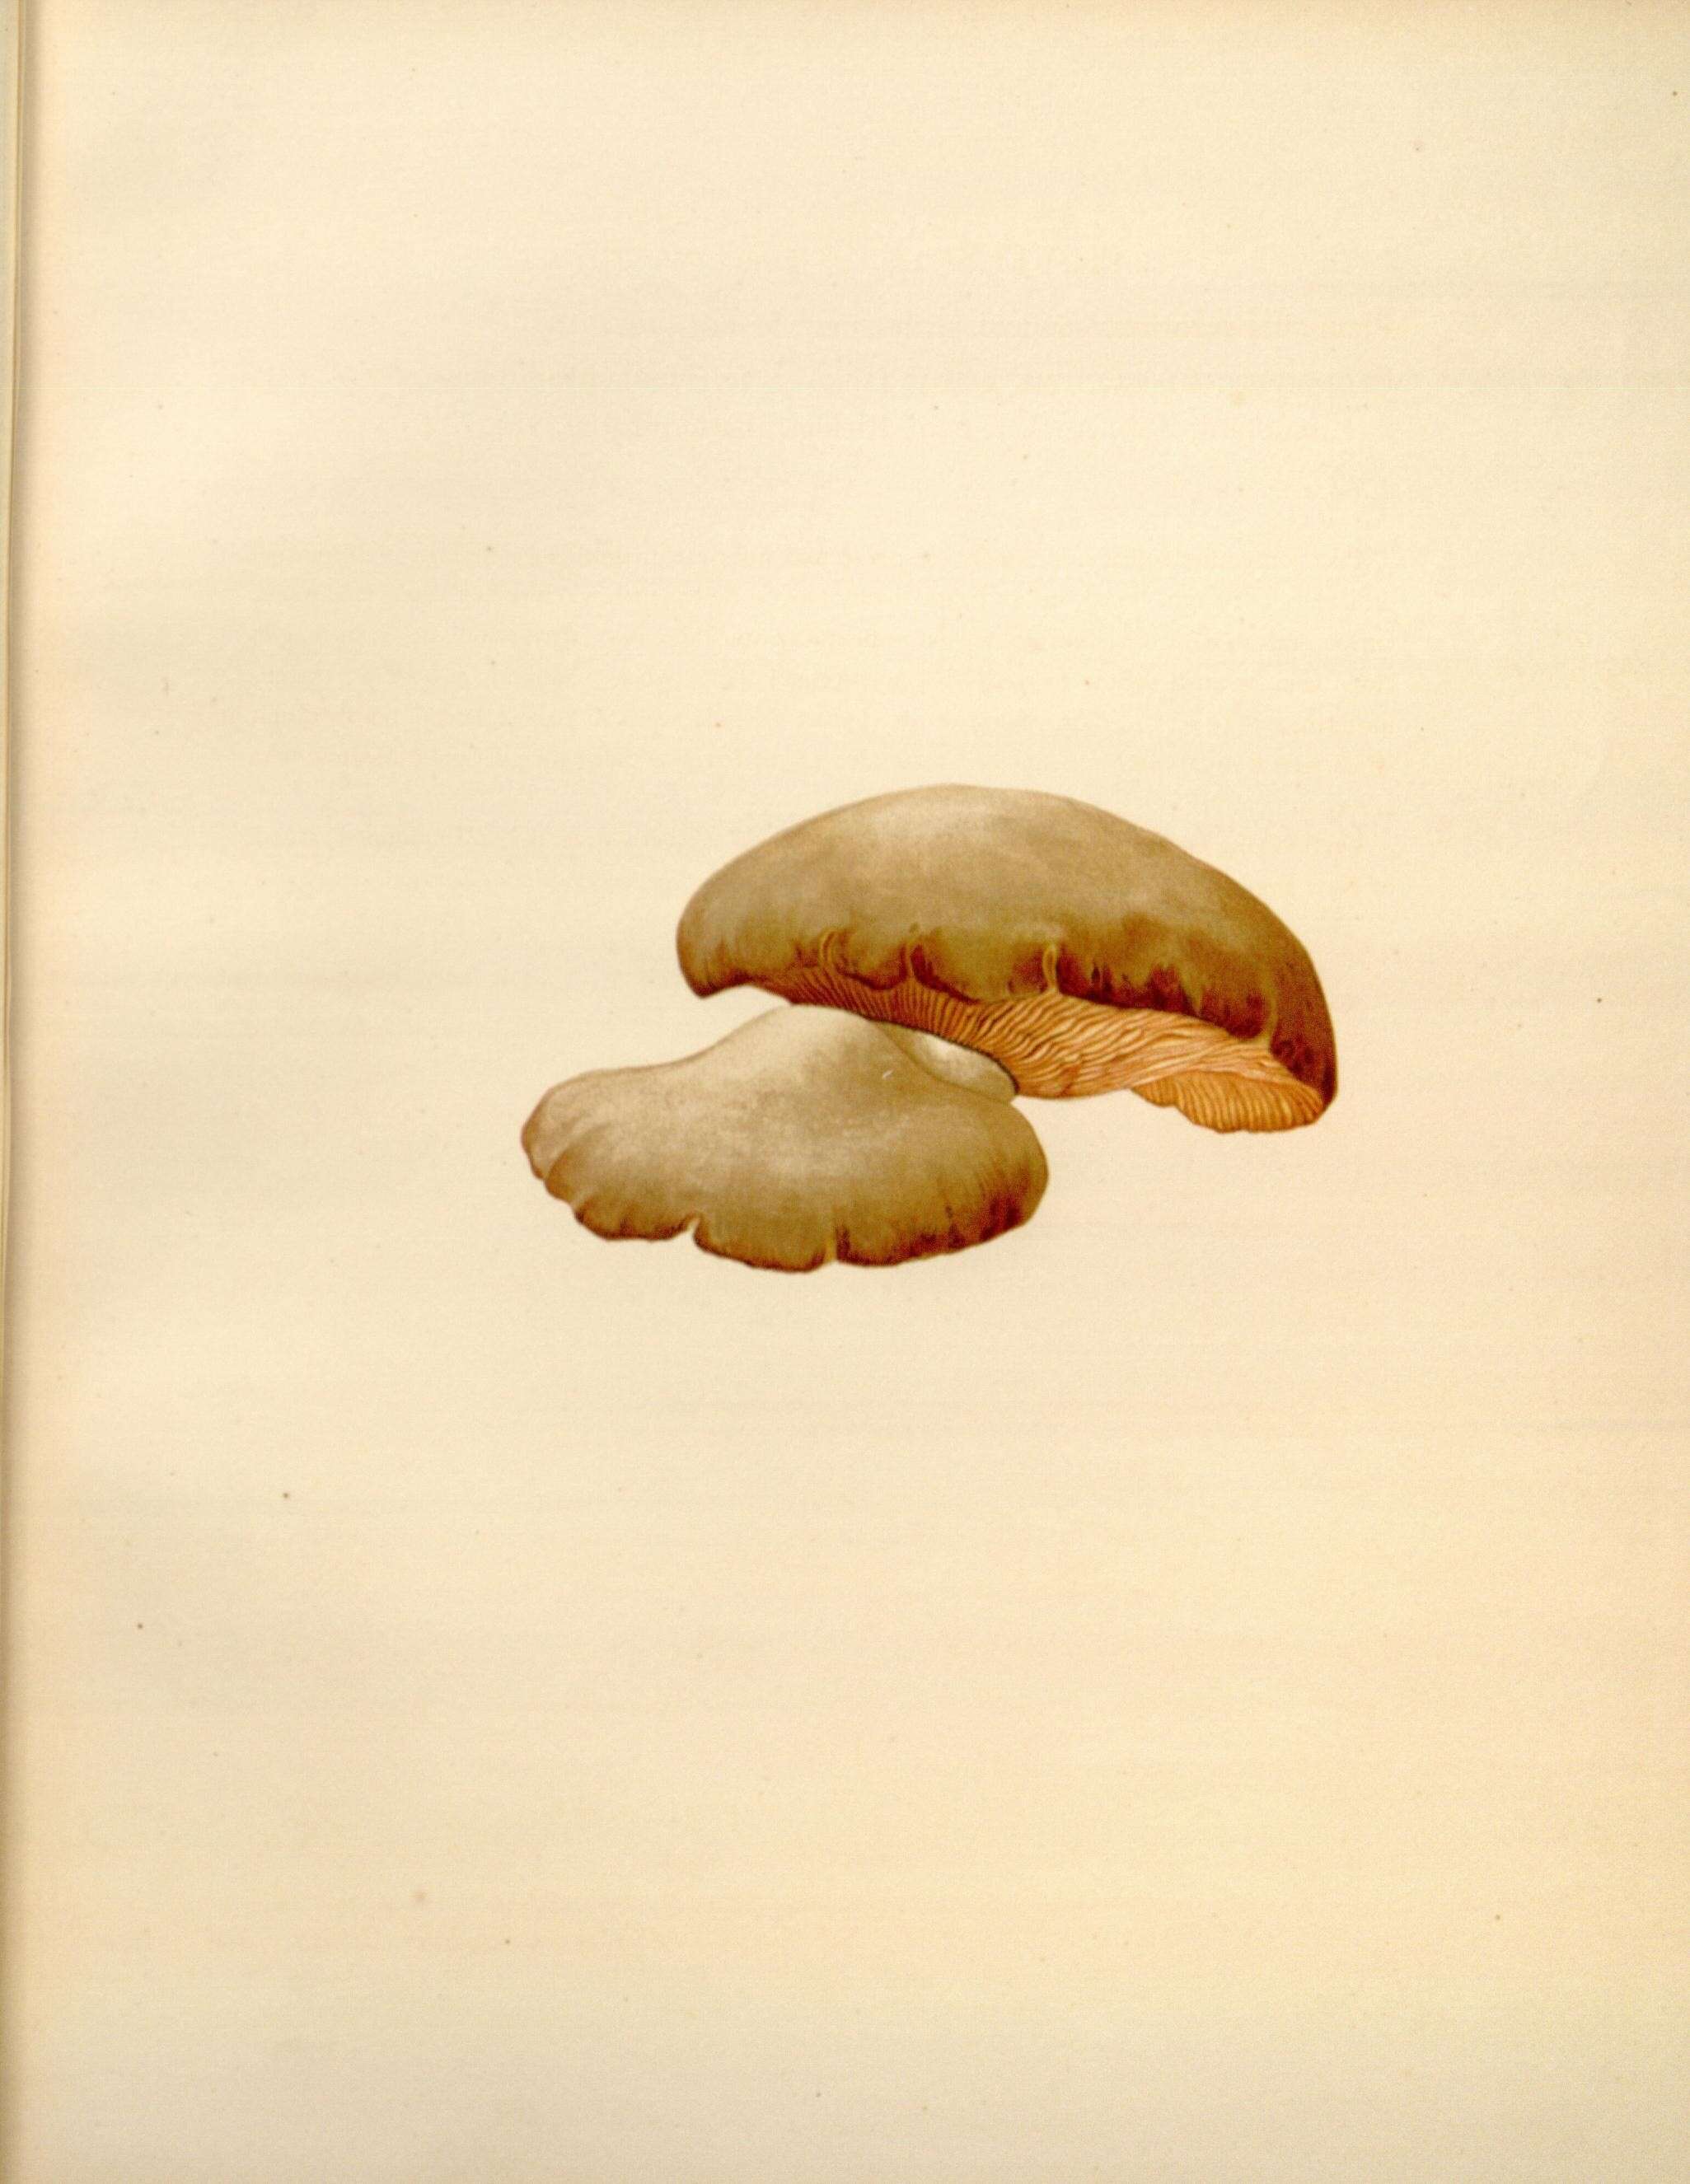 Image of Panellus serotinus (Pers.) Kühner 1950